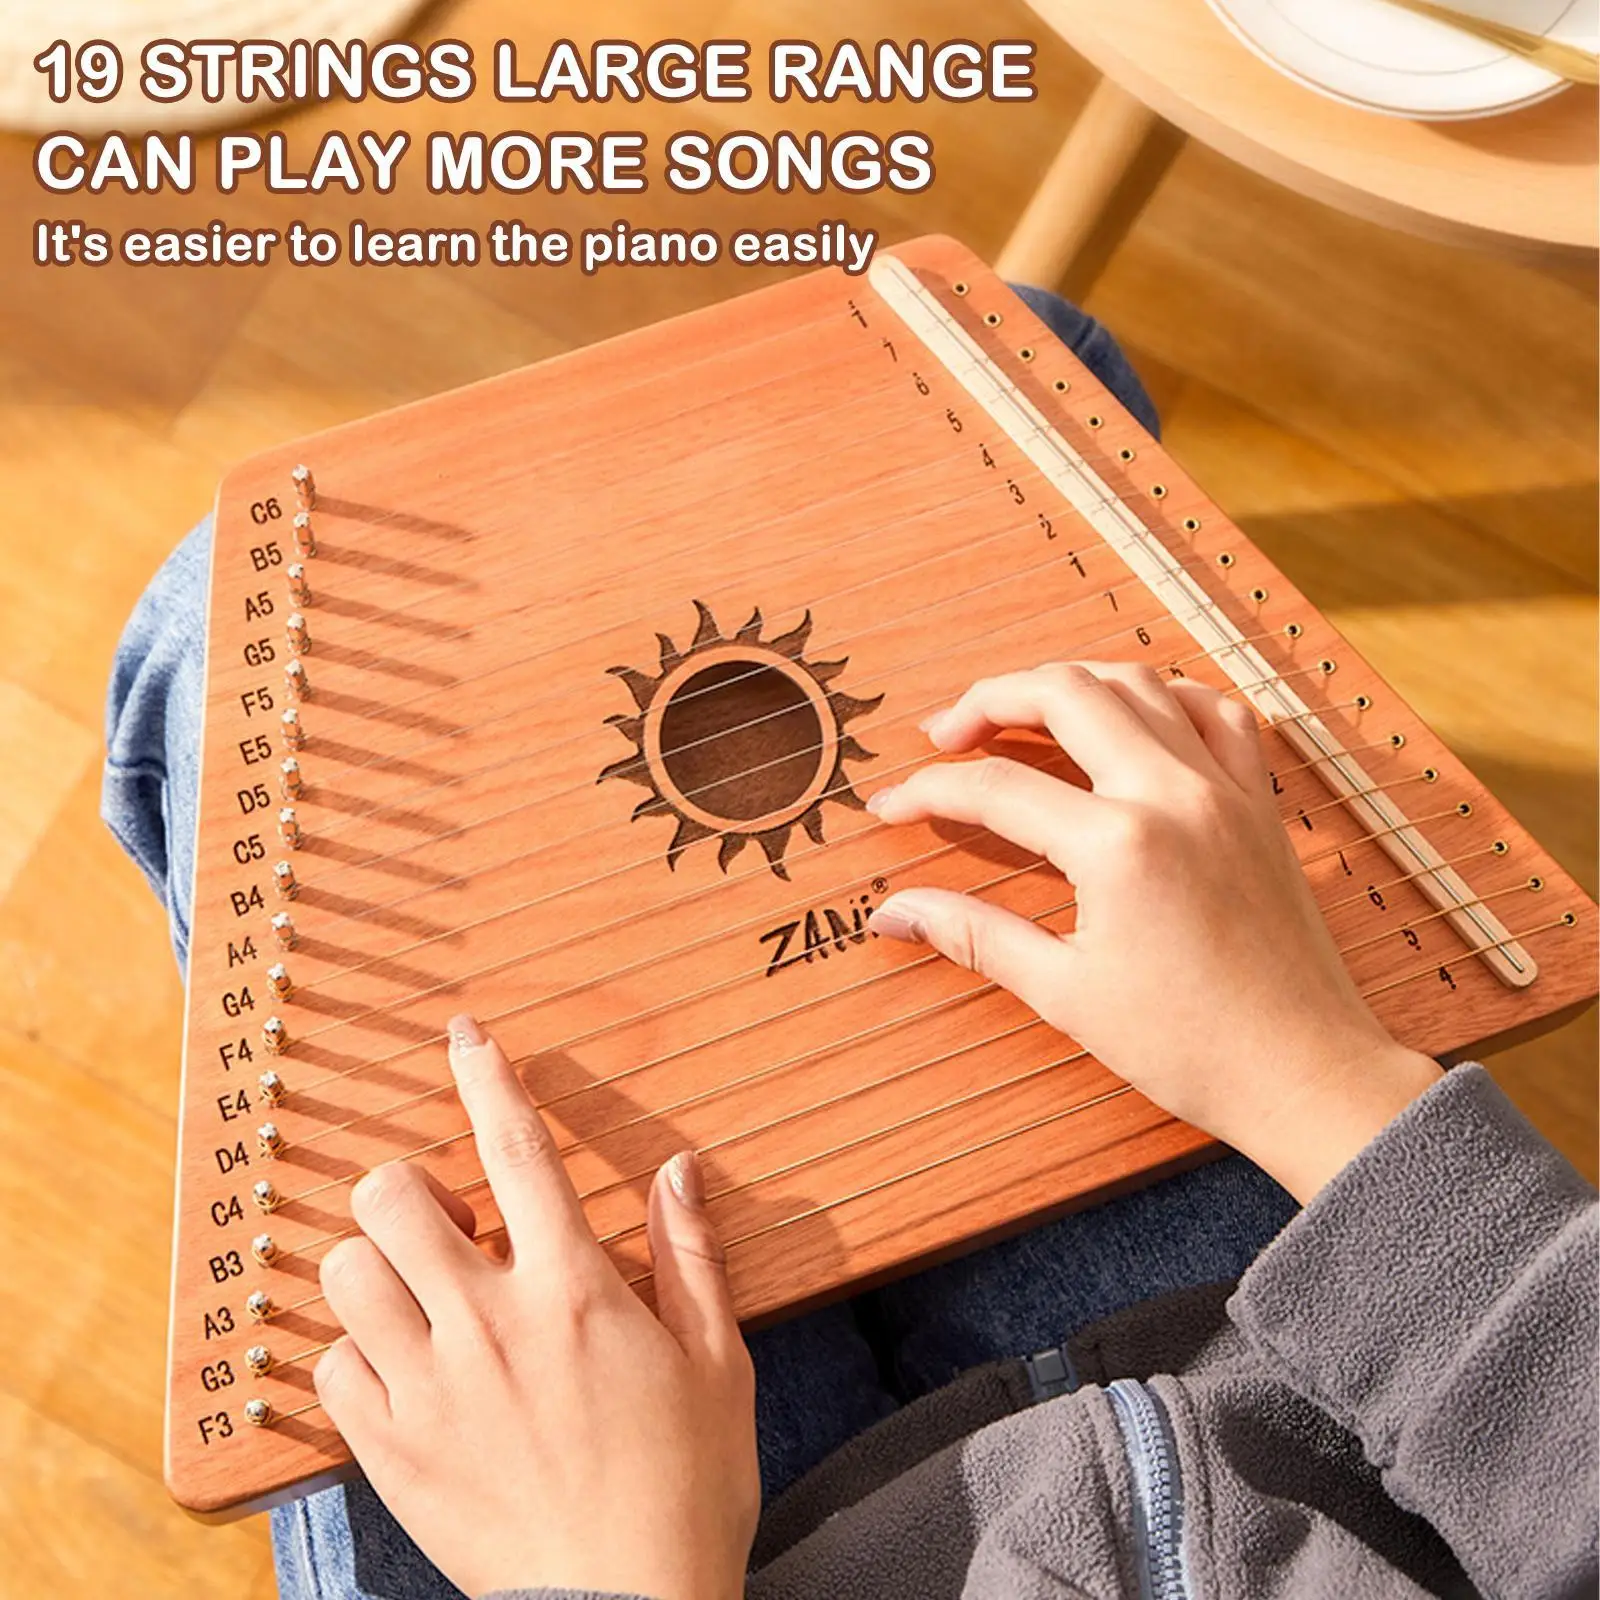 

19 Strings Wooden Mahogany Lyre Harp Musical Instrument Stringed Instrument Lyre Harp With Tuning Tool For Beginner Gift Q4x5